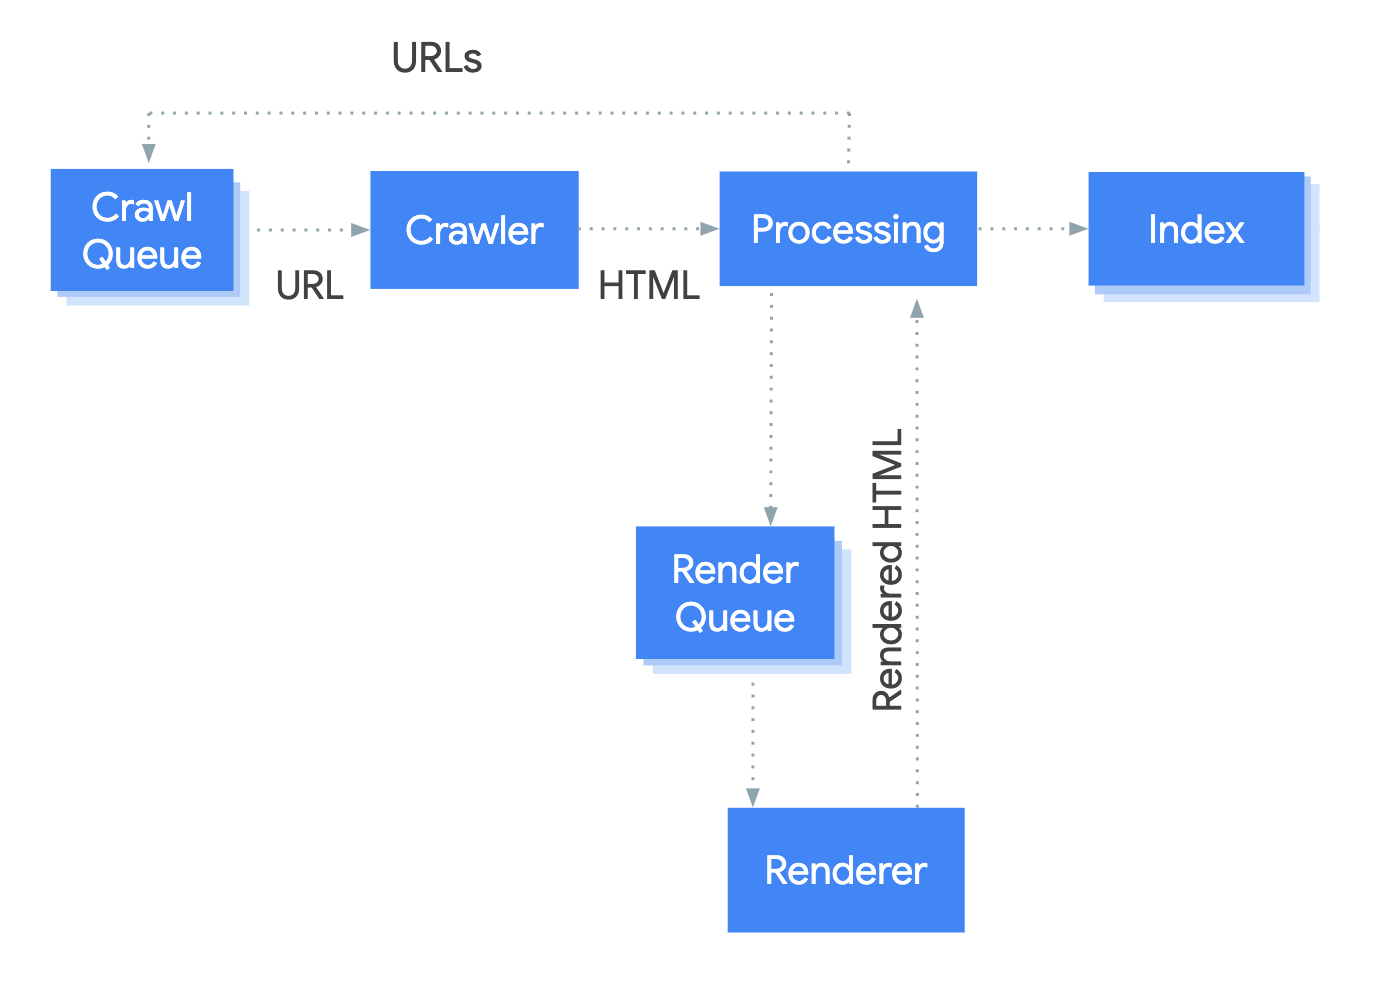 https://developers.google.com/search/docs/guides/images/googlebot-crawl-render-index.png